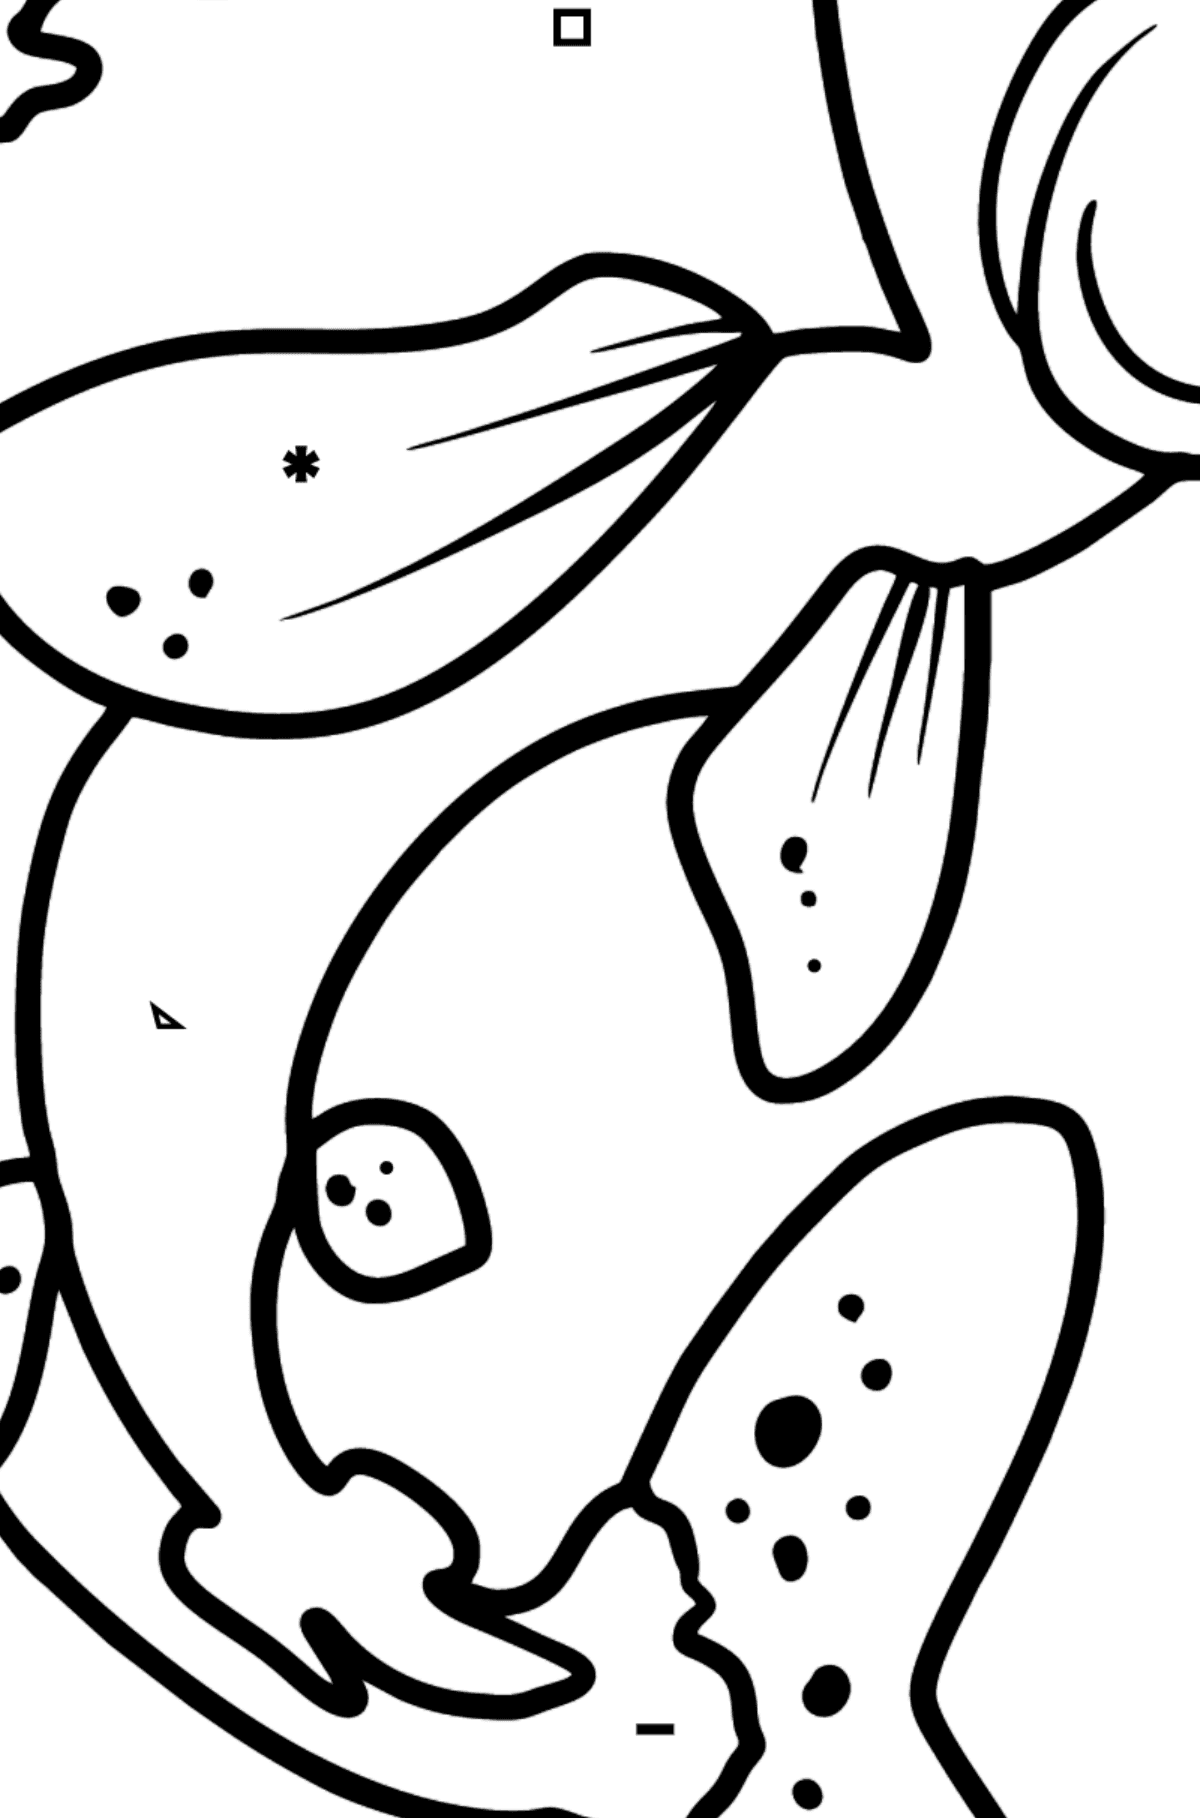 Dibujo de salmón para colorear - Colorear por Símbolos para Niños